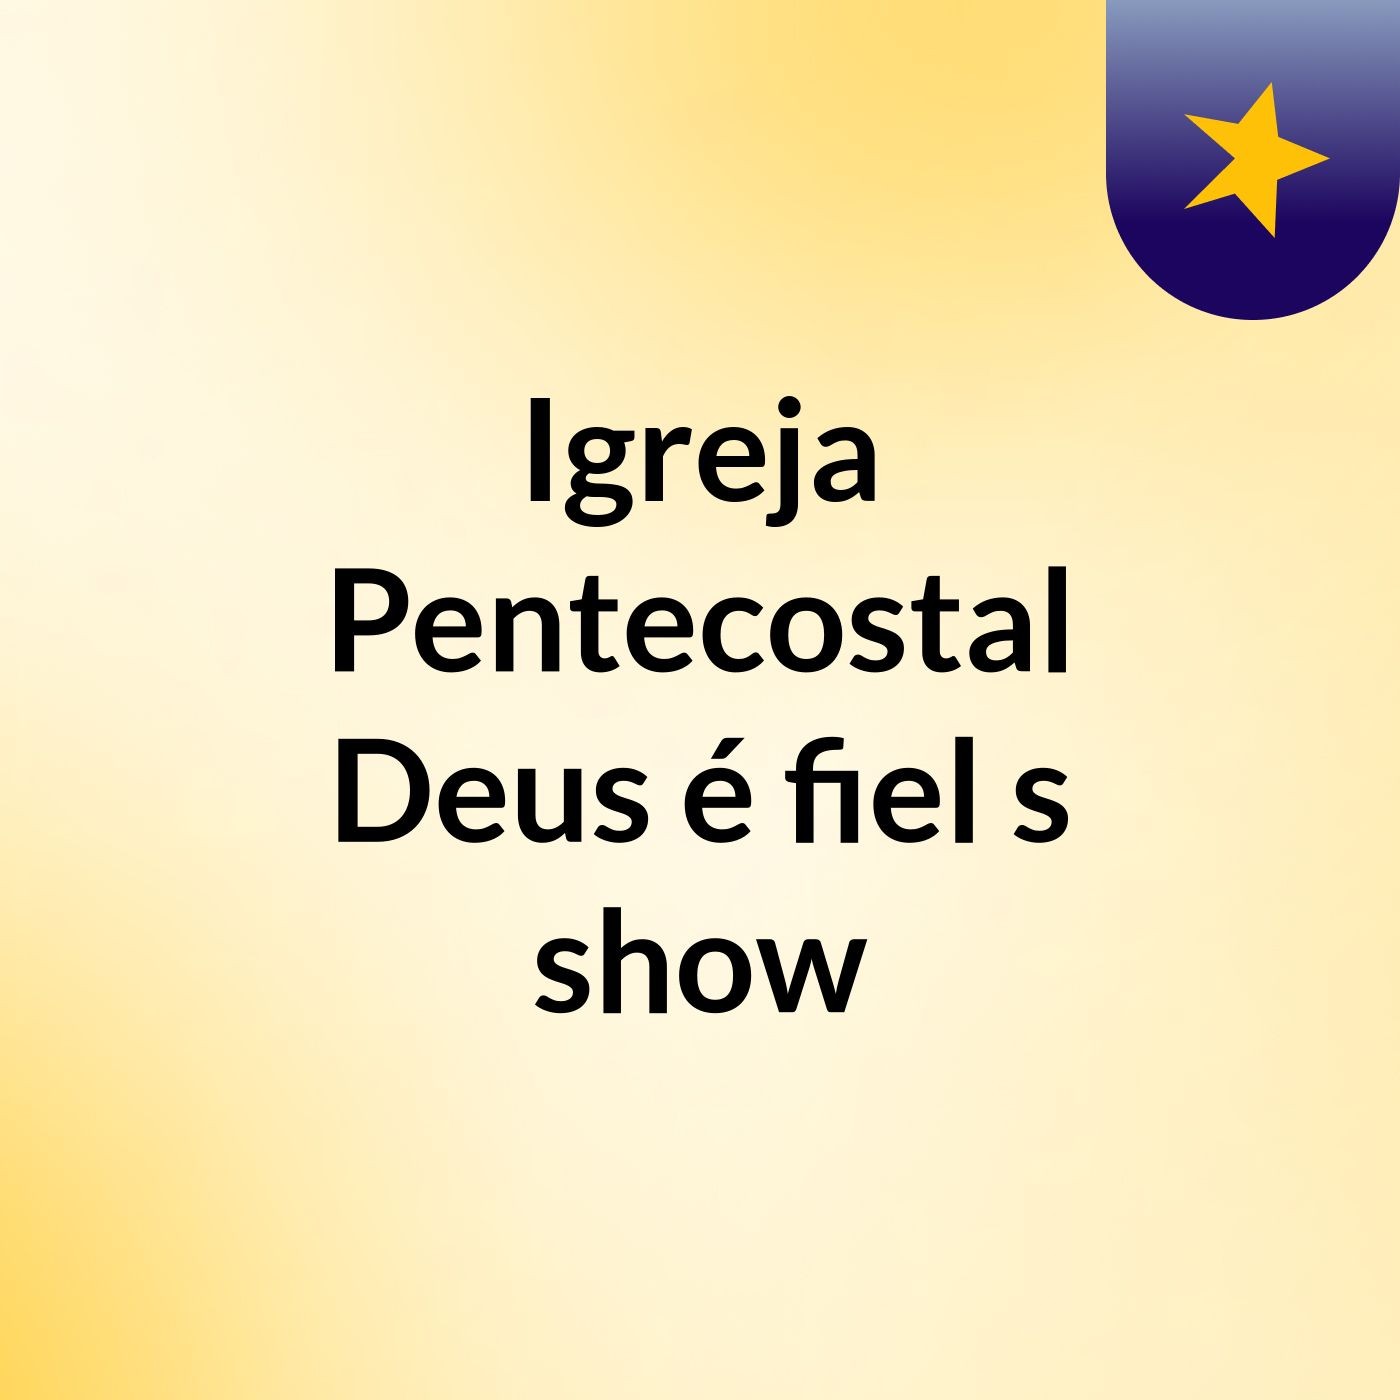 Igreja Pentecostal Deus é fiel's show